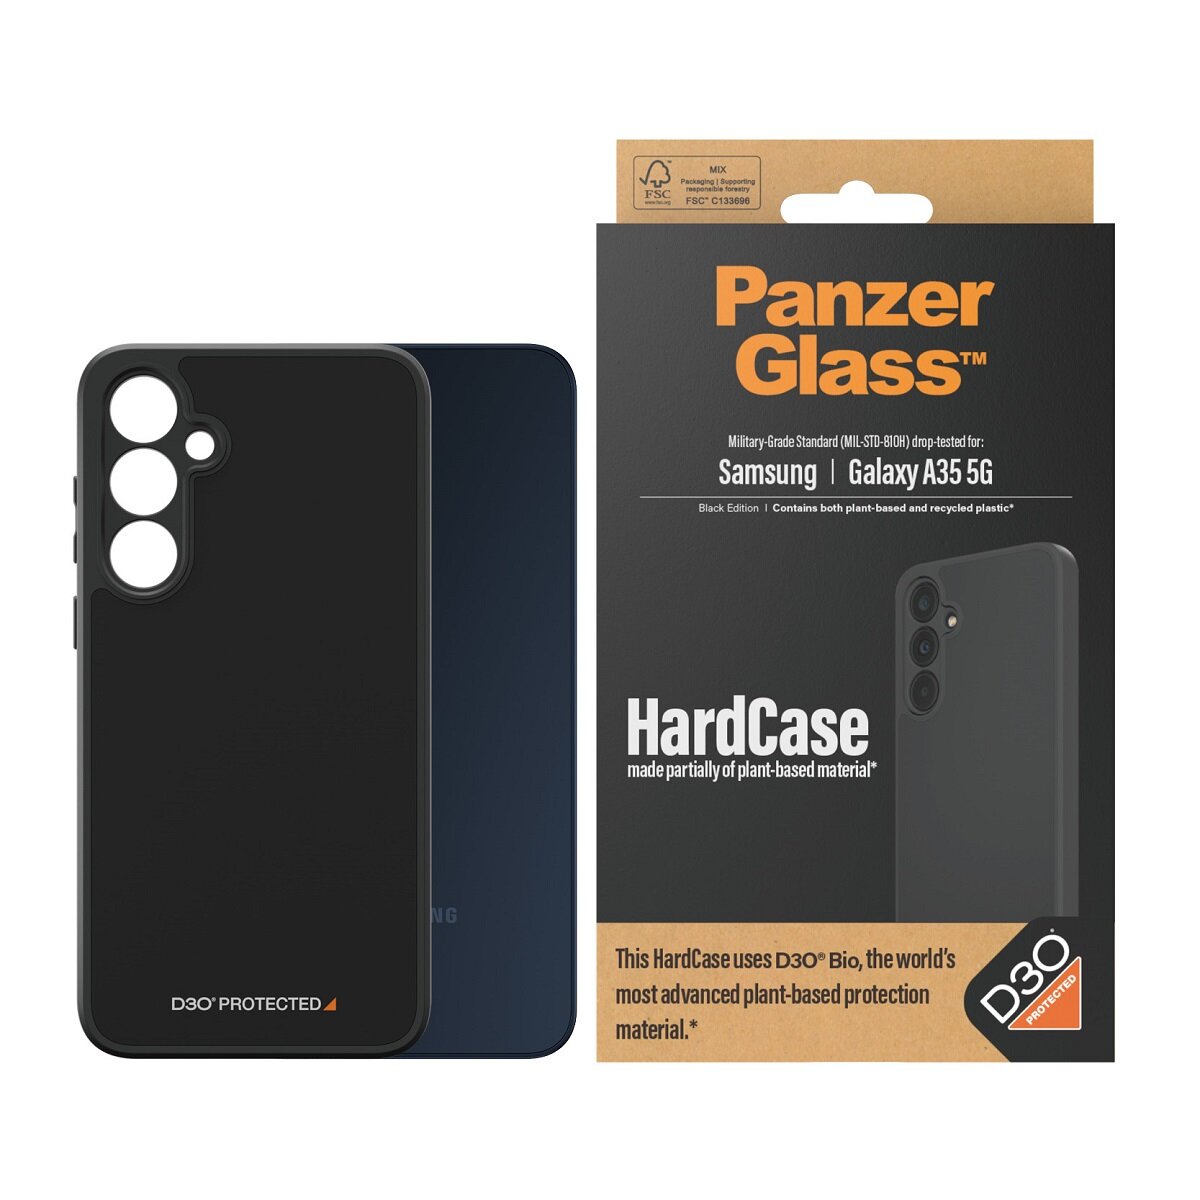 Etui PanzerGlass HardCase Galaxy A35 5G wraz z telefonem oraz opakowanie od frontu